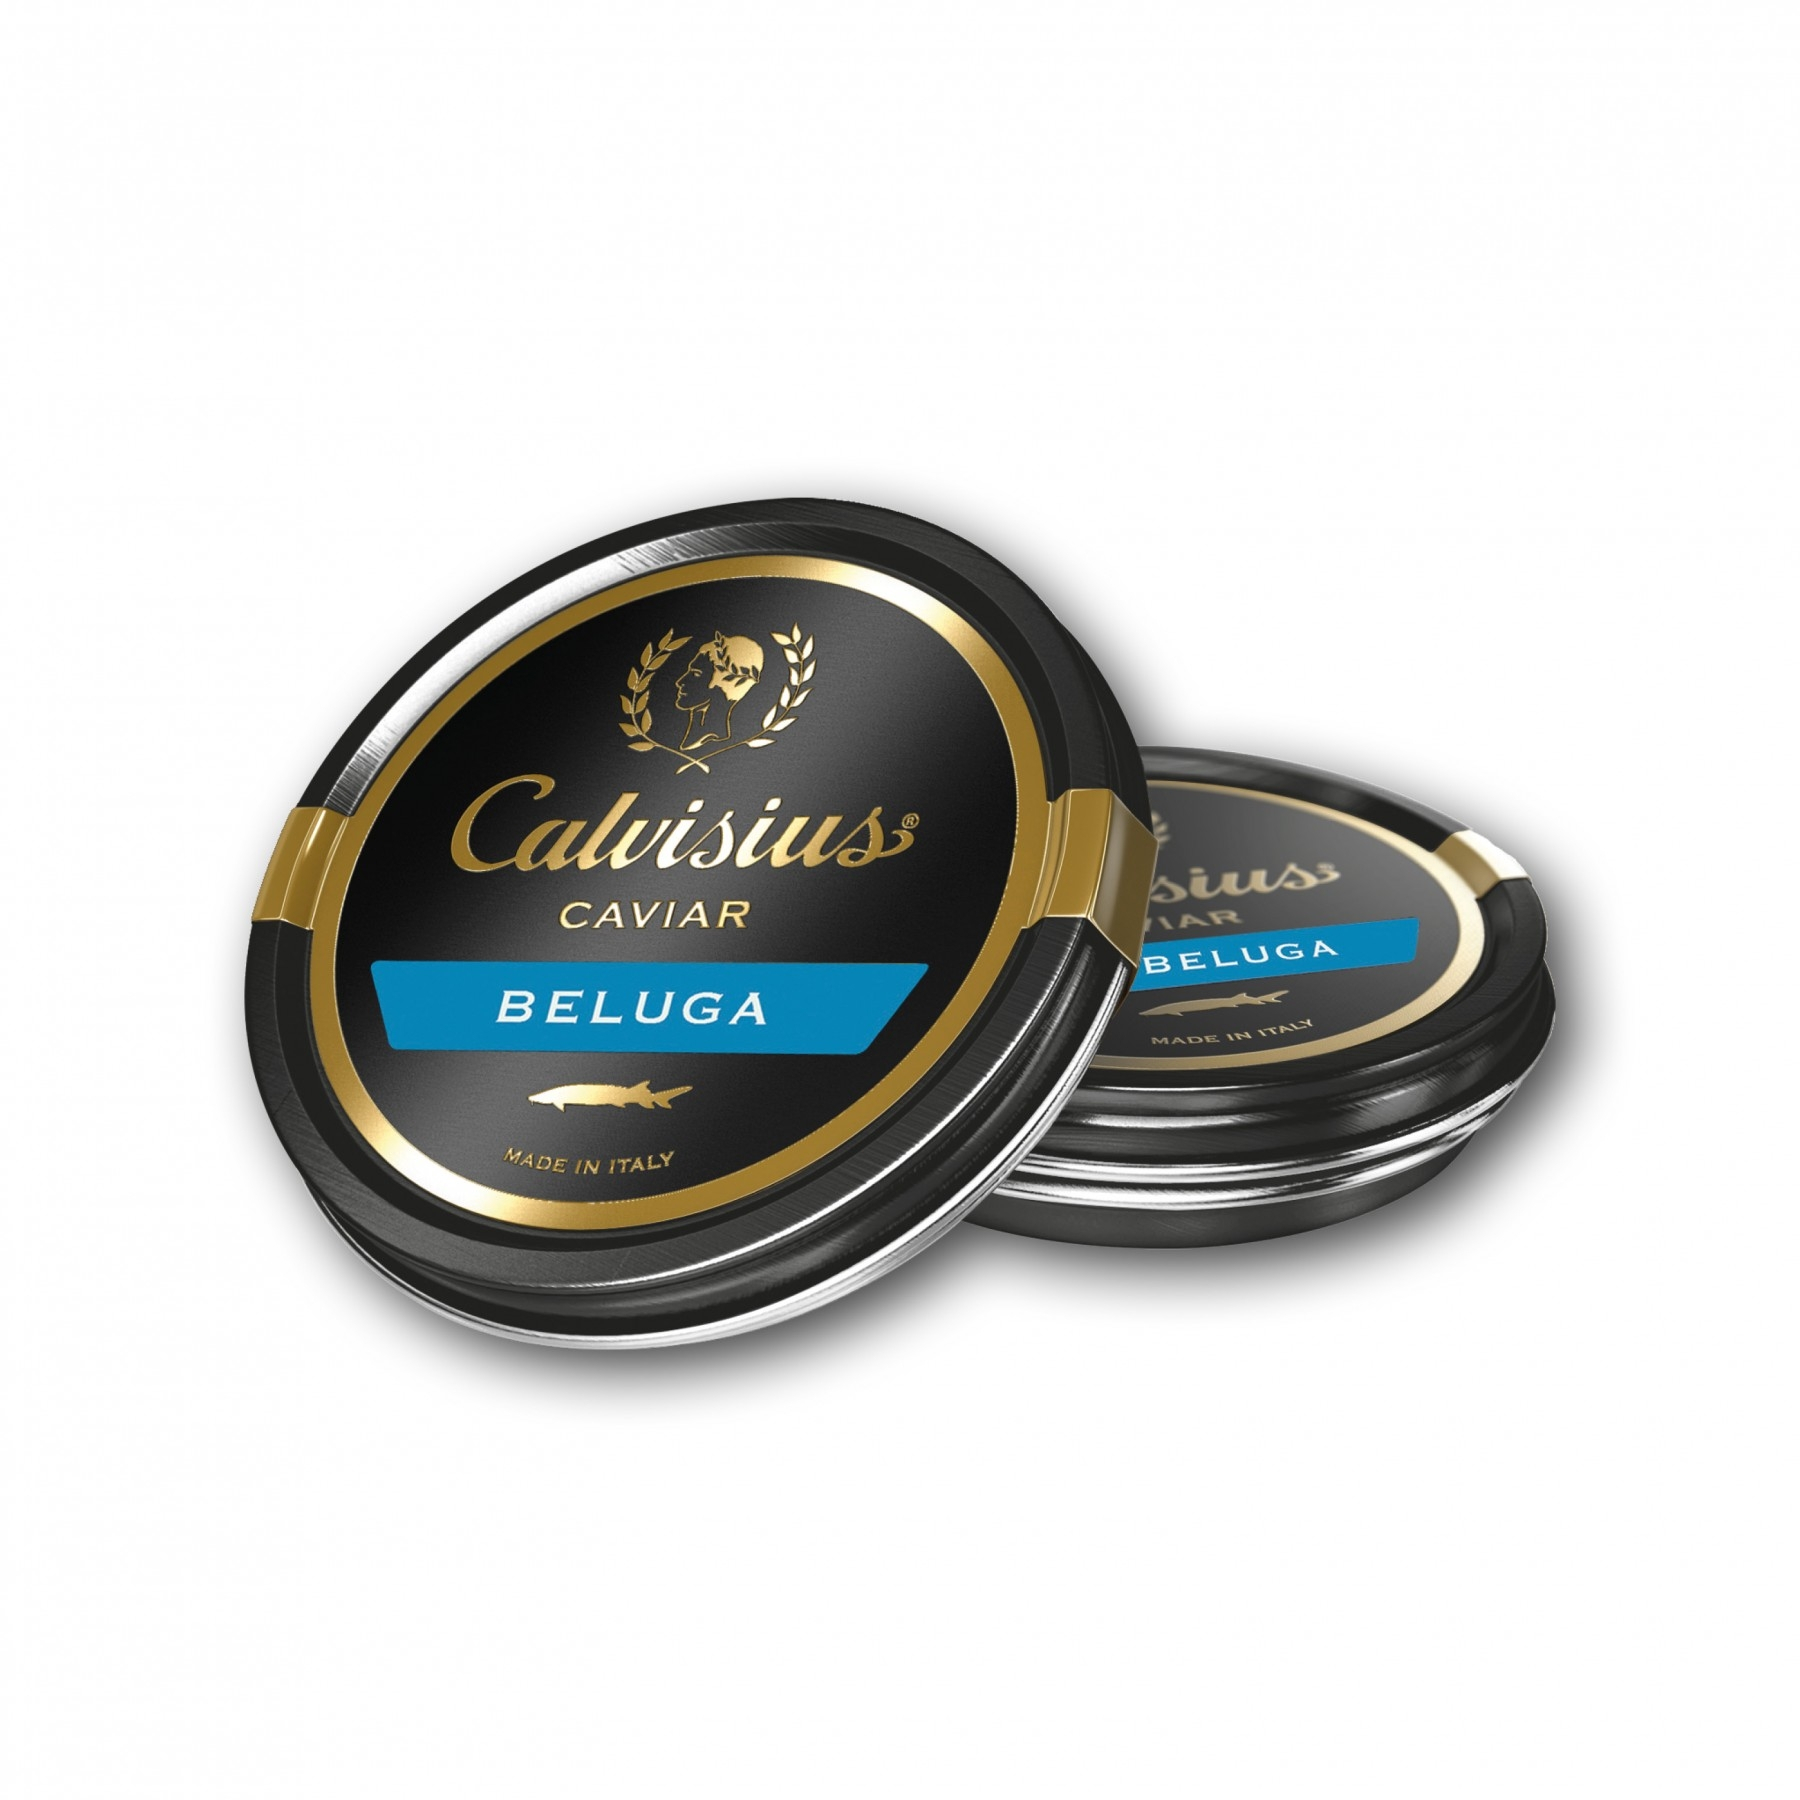 Calvisius Caviar Beluga